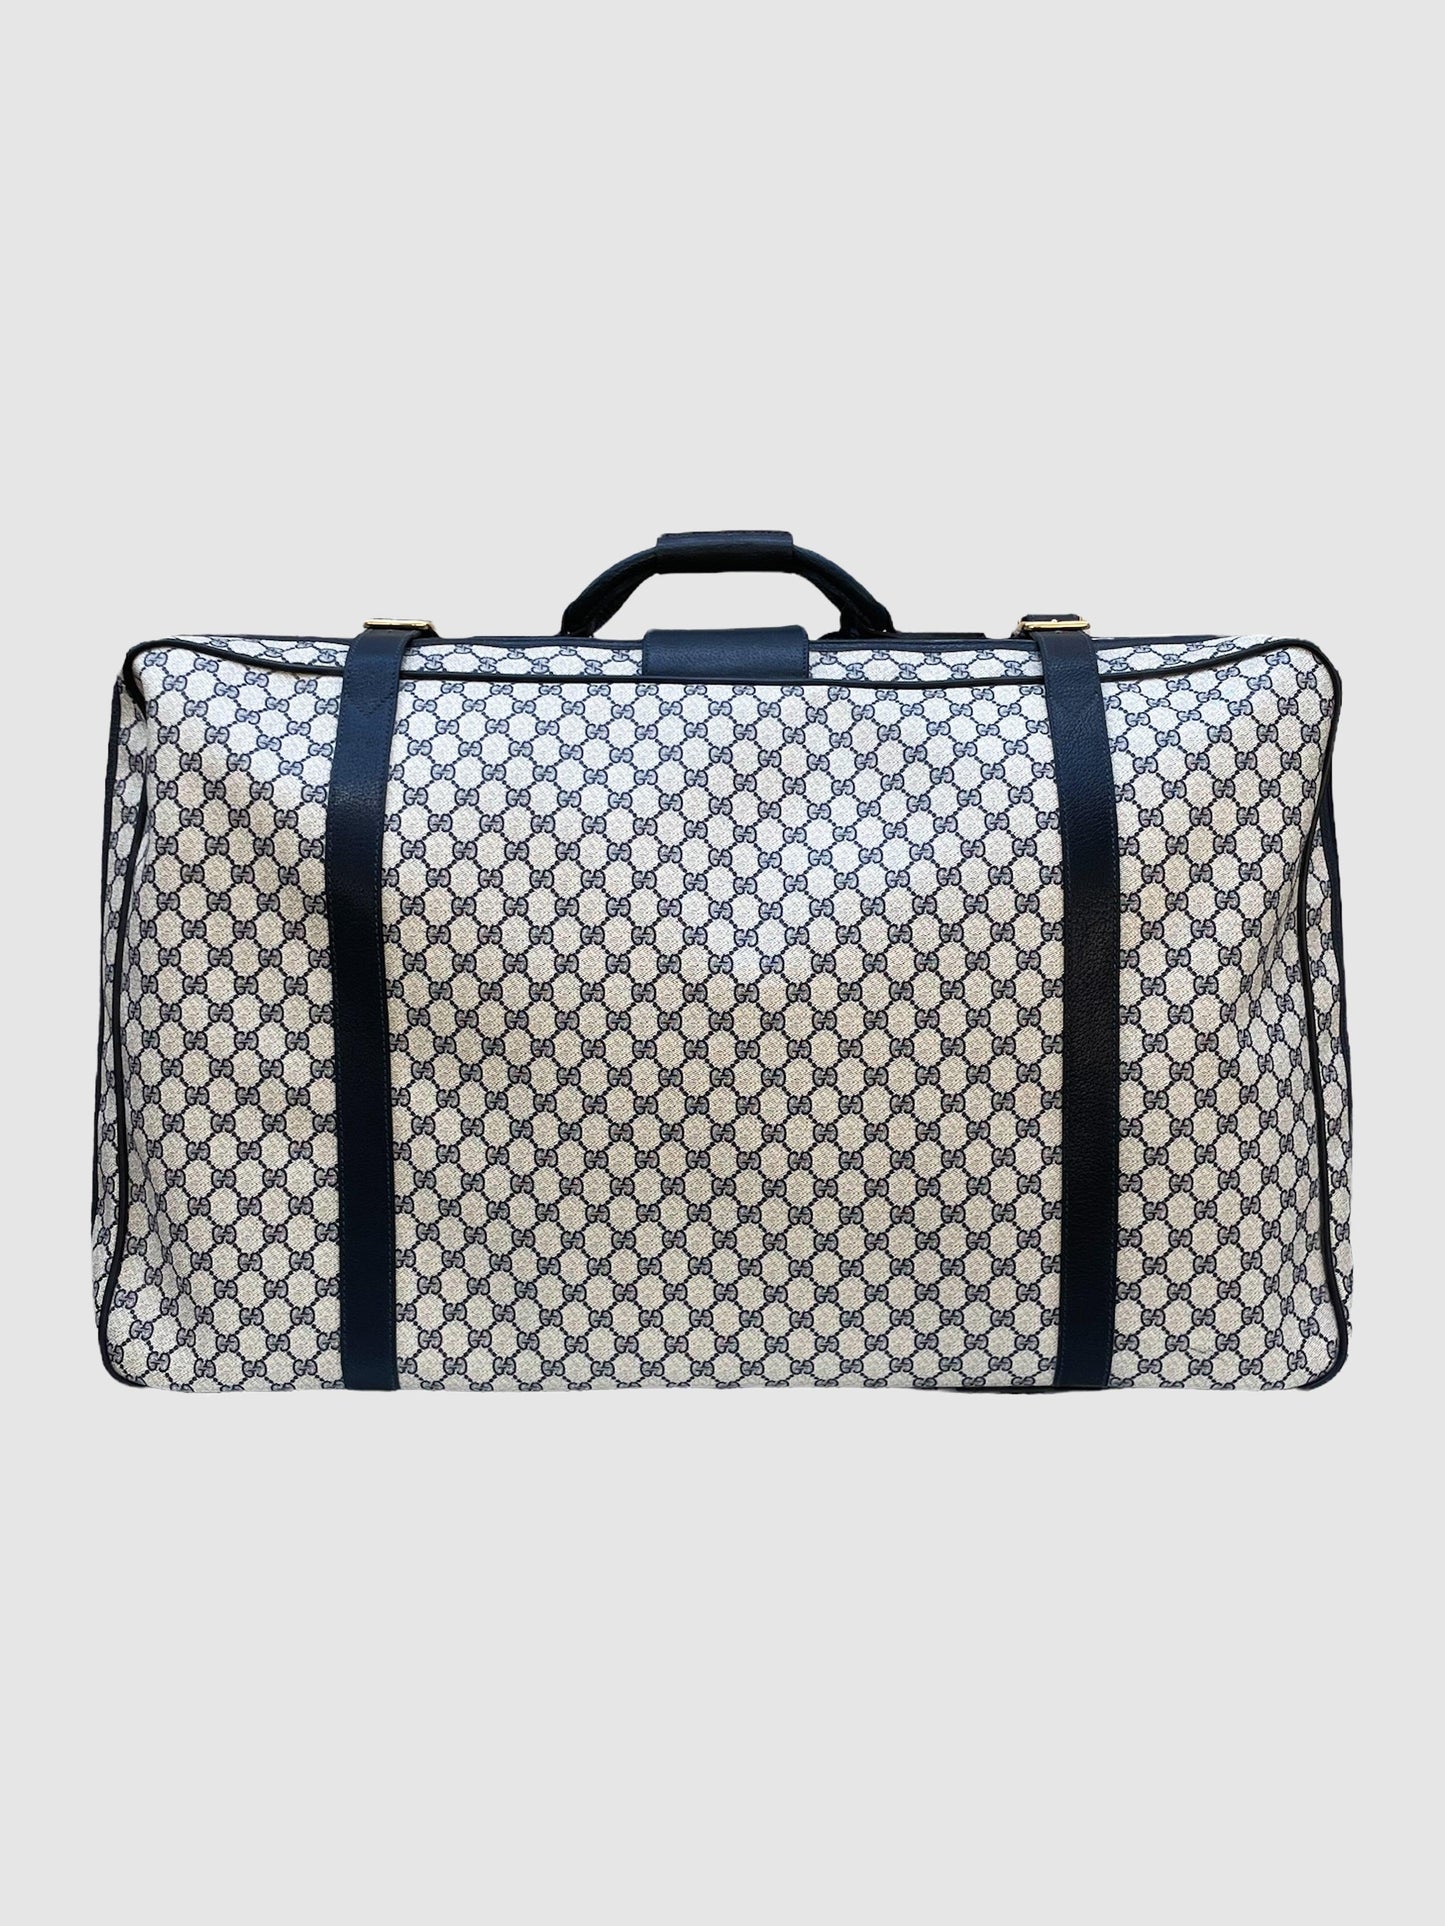 Gucci Vintage Suitcase Travel Bag Large - Second Nature Boutique